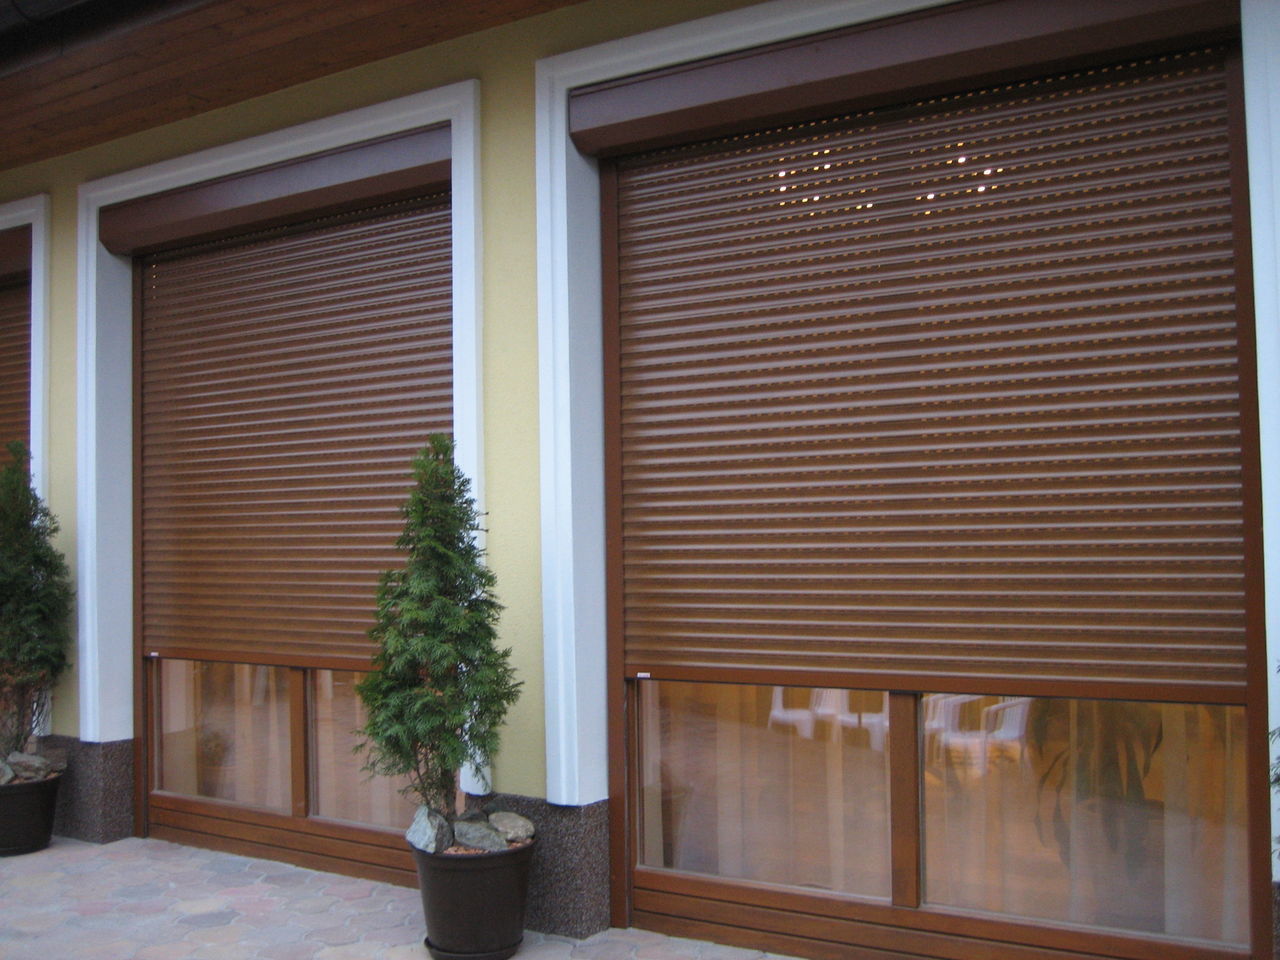 Taparele – rolete pentru ferestre moldova protectie de la furt! foto 5